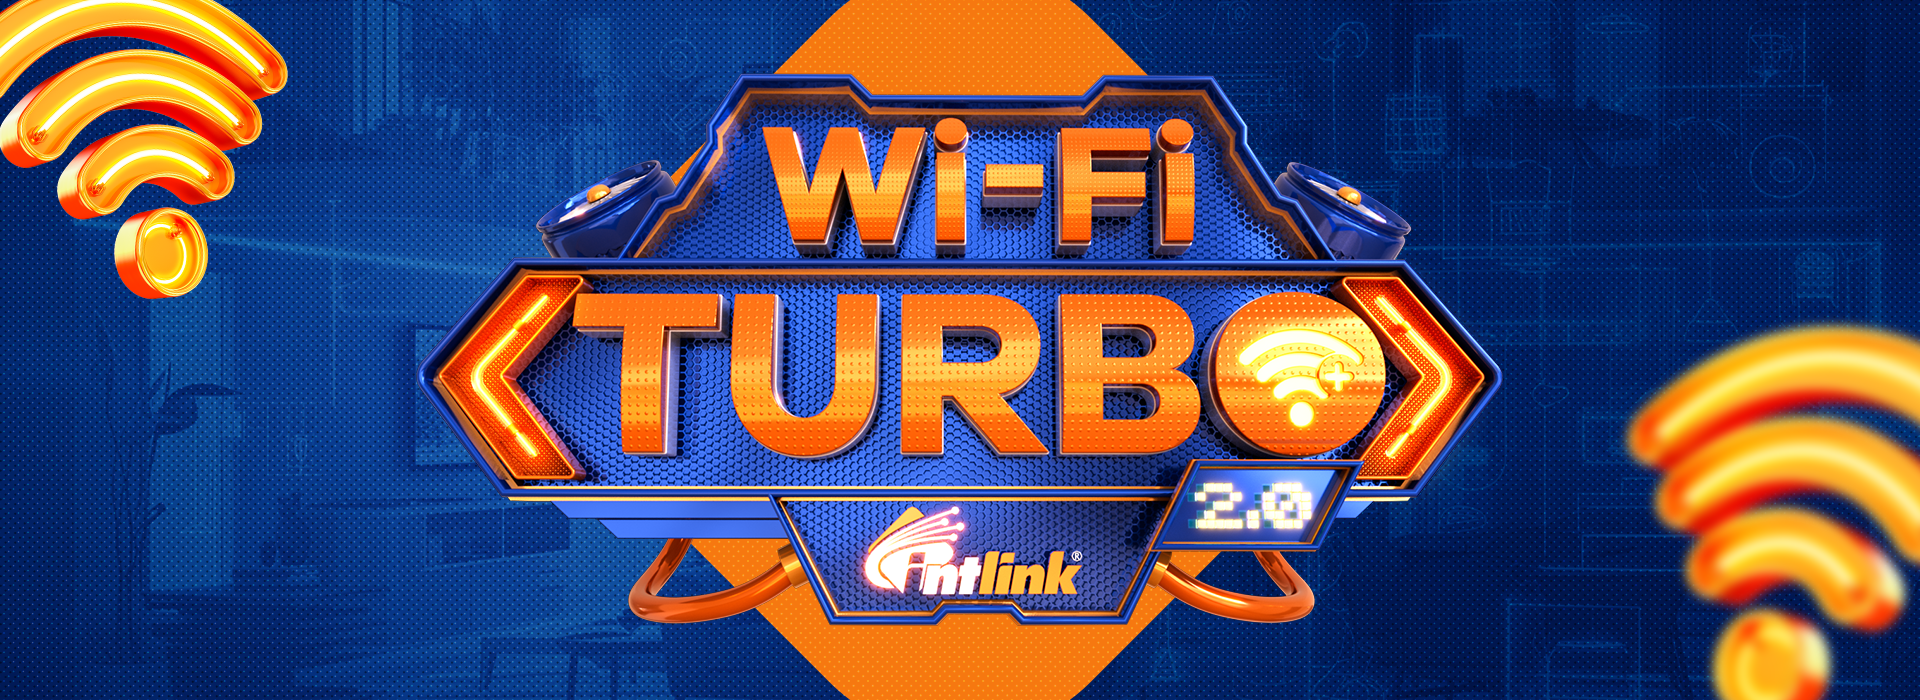 Campanha Wi-Fi Turbo 2.0